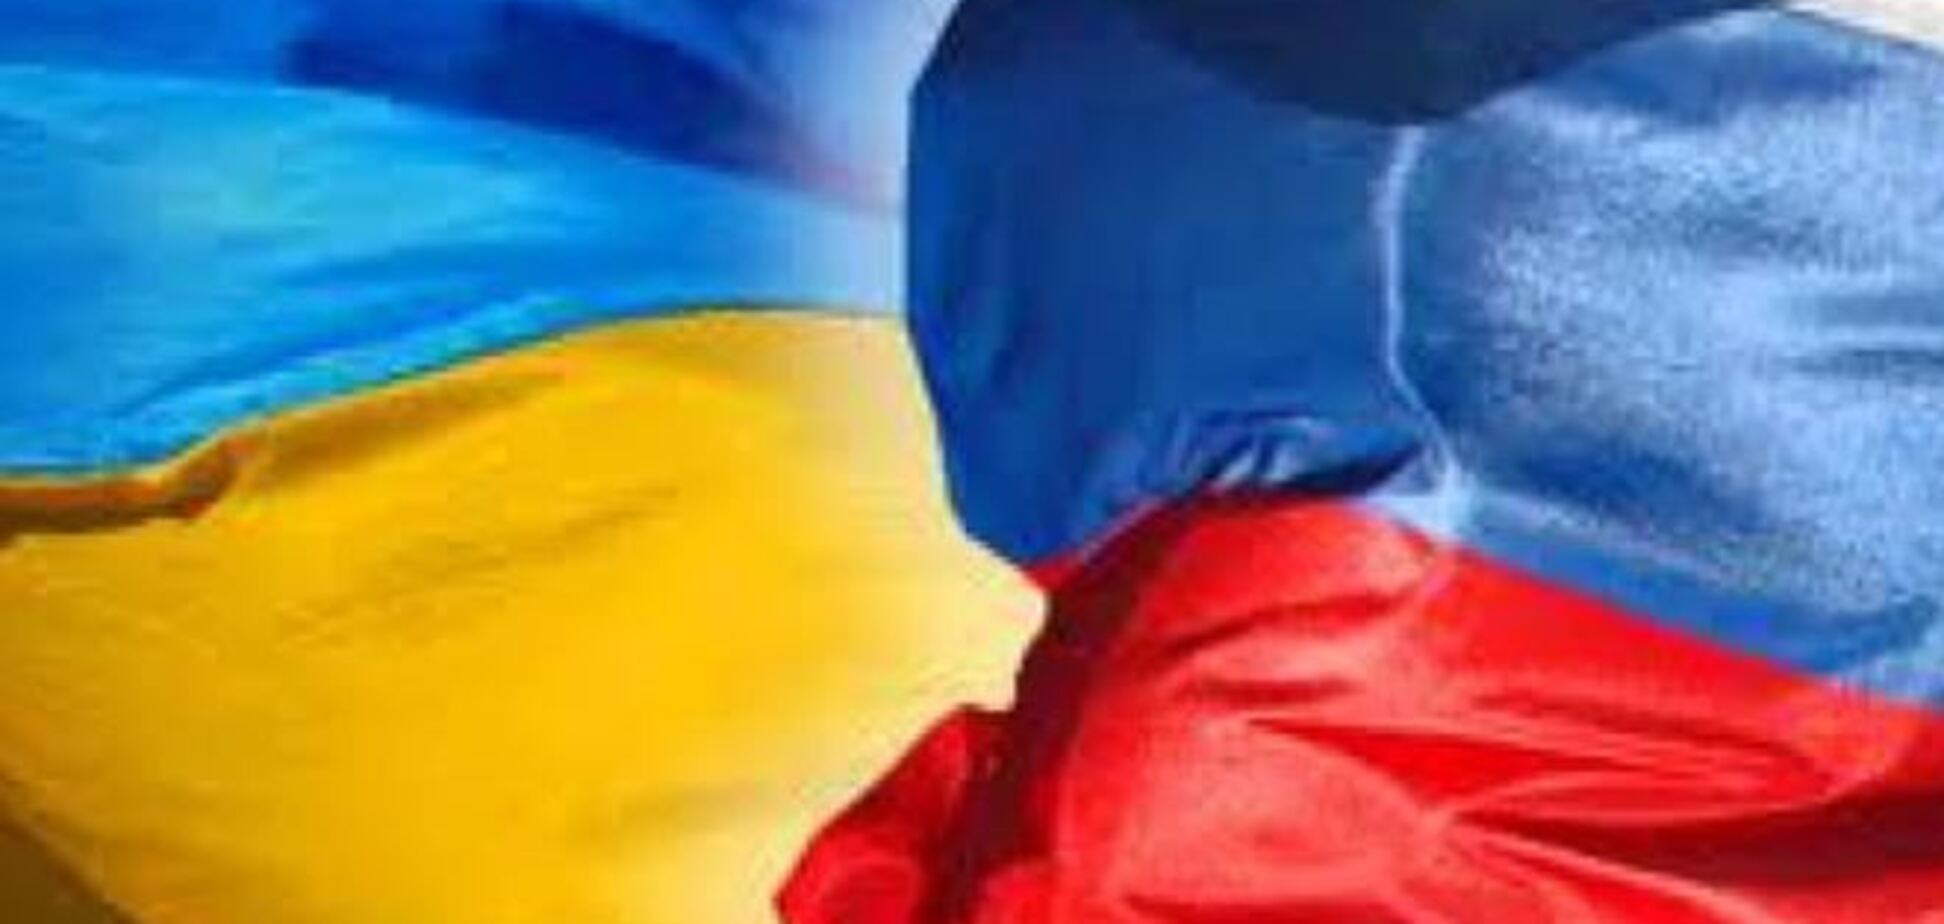 Чергове засідання міждержавної комісії України та Росії відбудеться в Києві